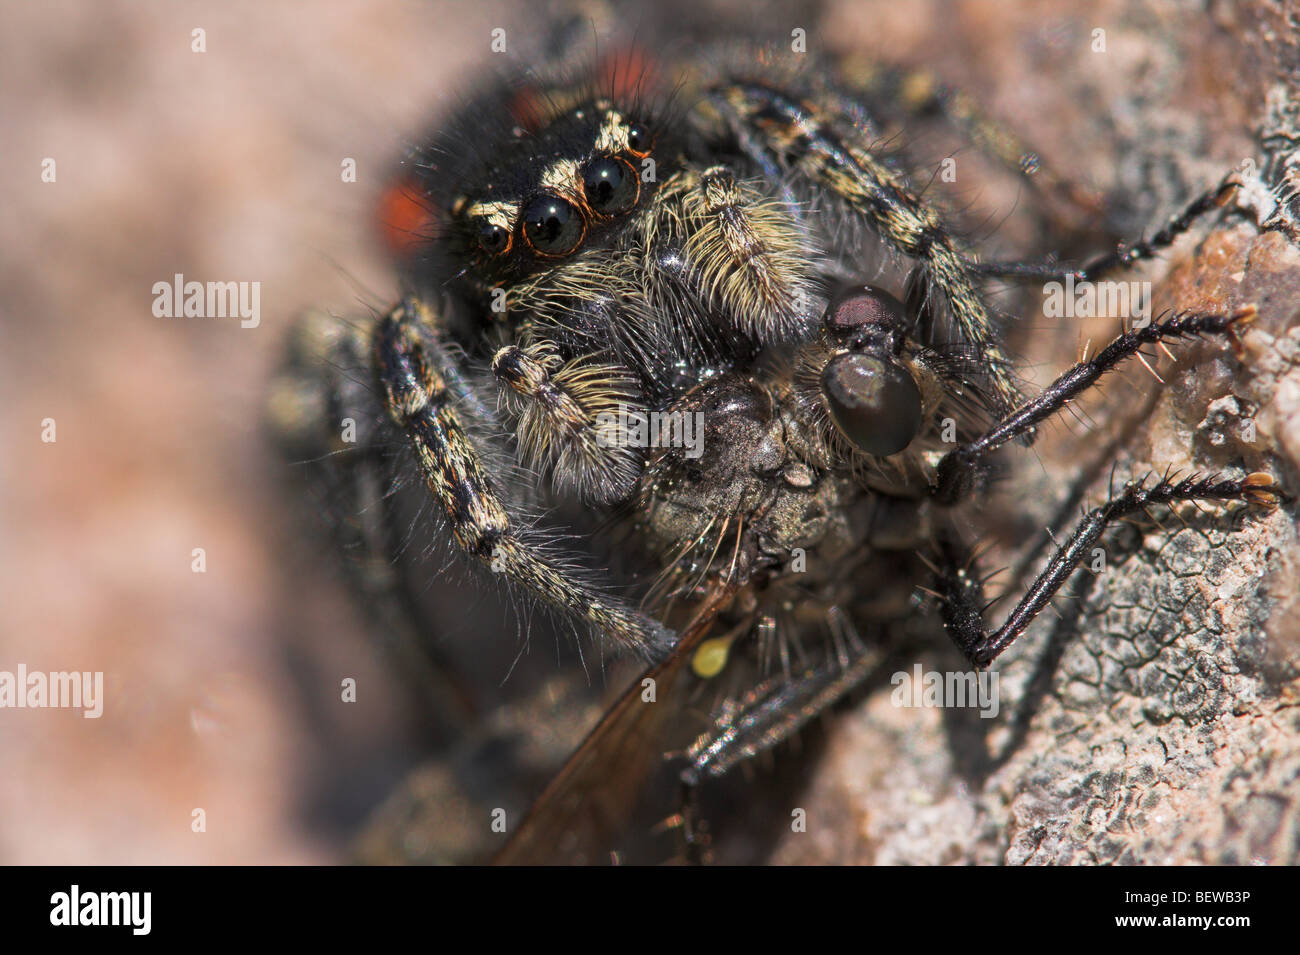 Araignée brune avec des insectes proies, macro shot Banque D'Images